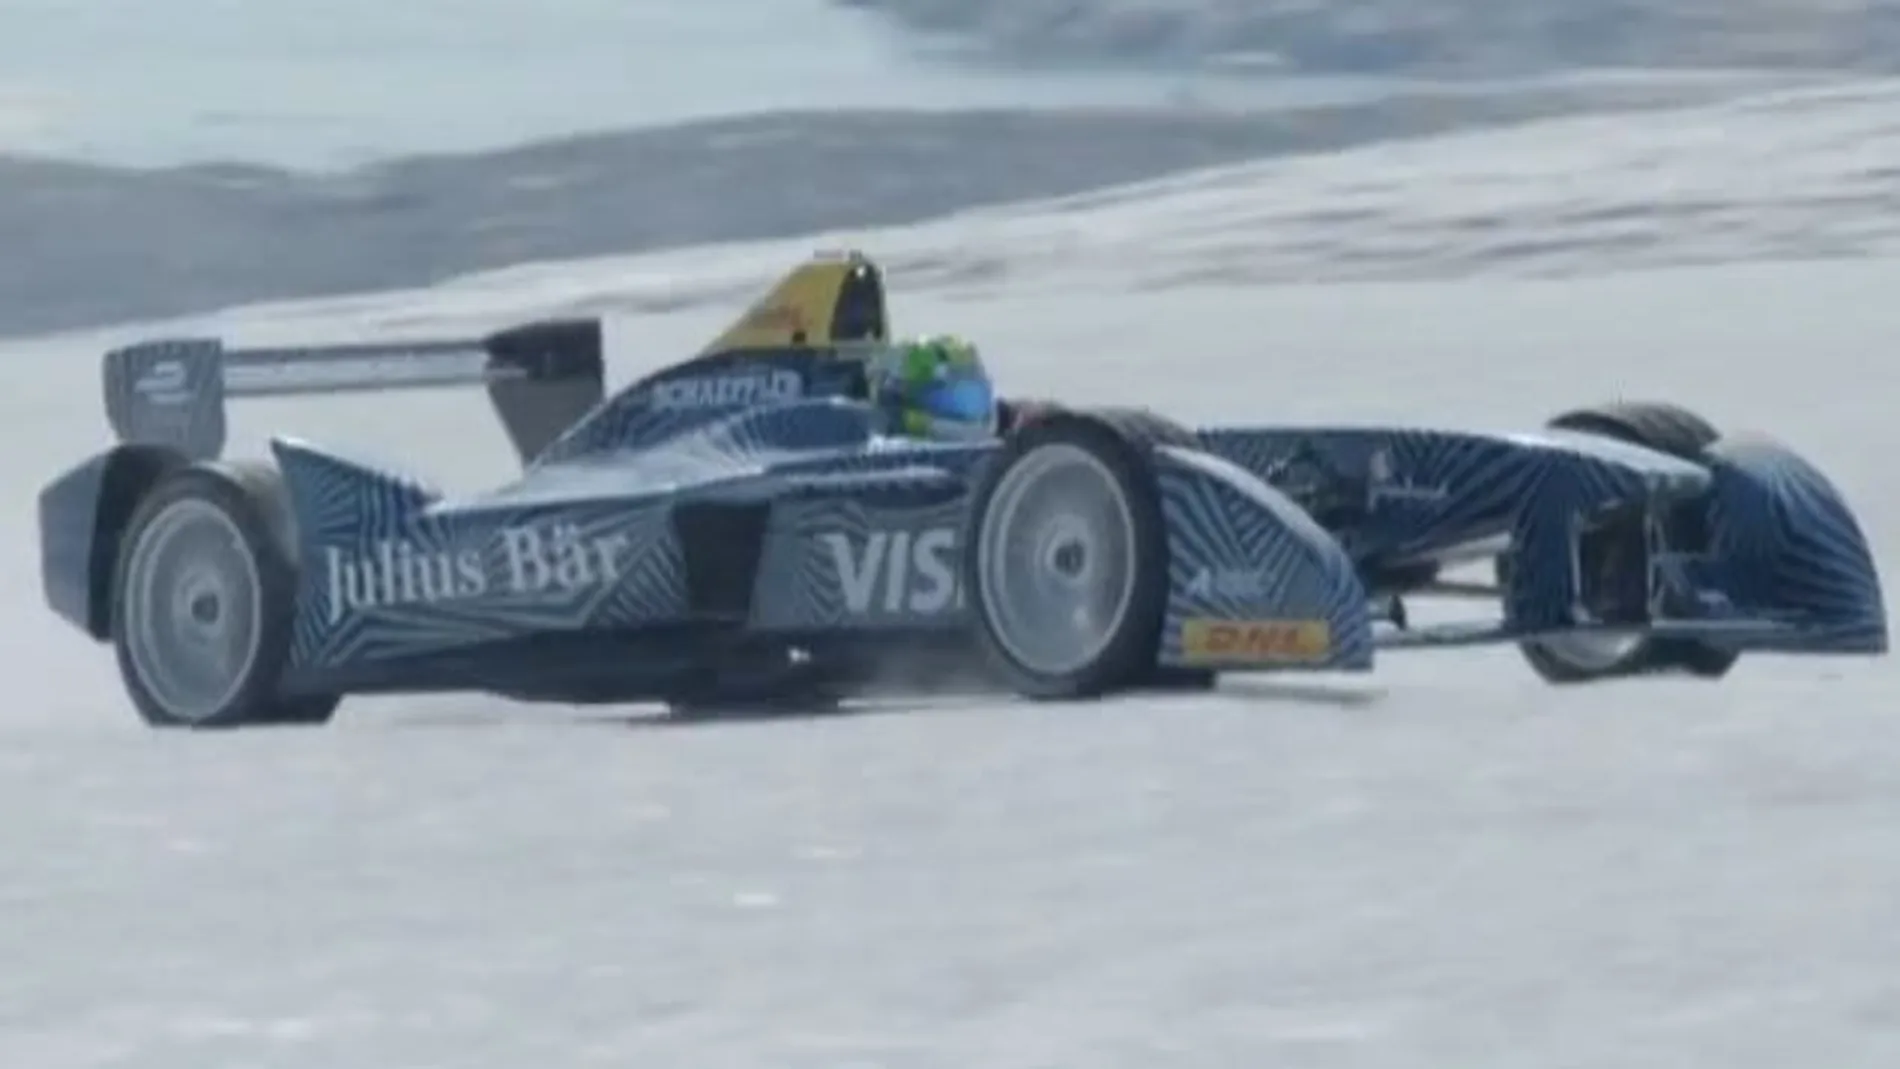 Un coche de Fórmula E, Fórmula Eléctrica, corre en el Ártico